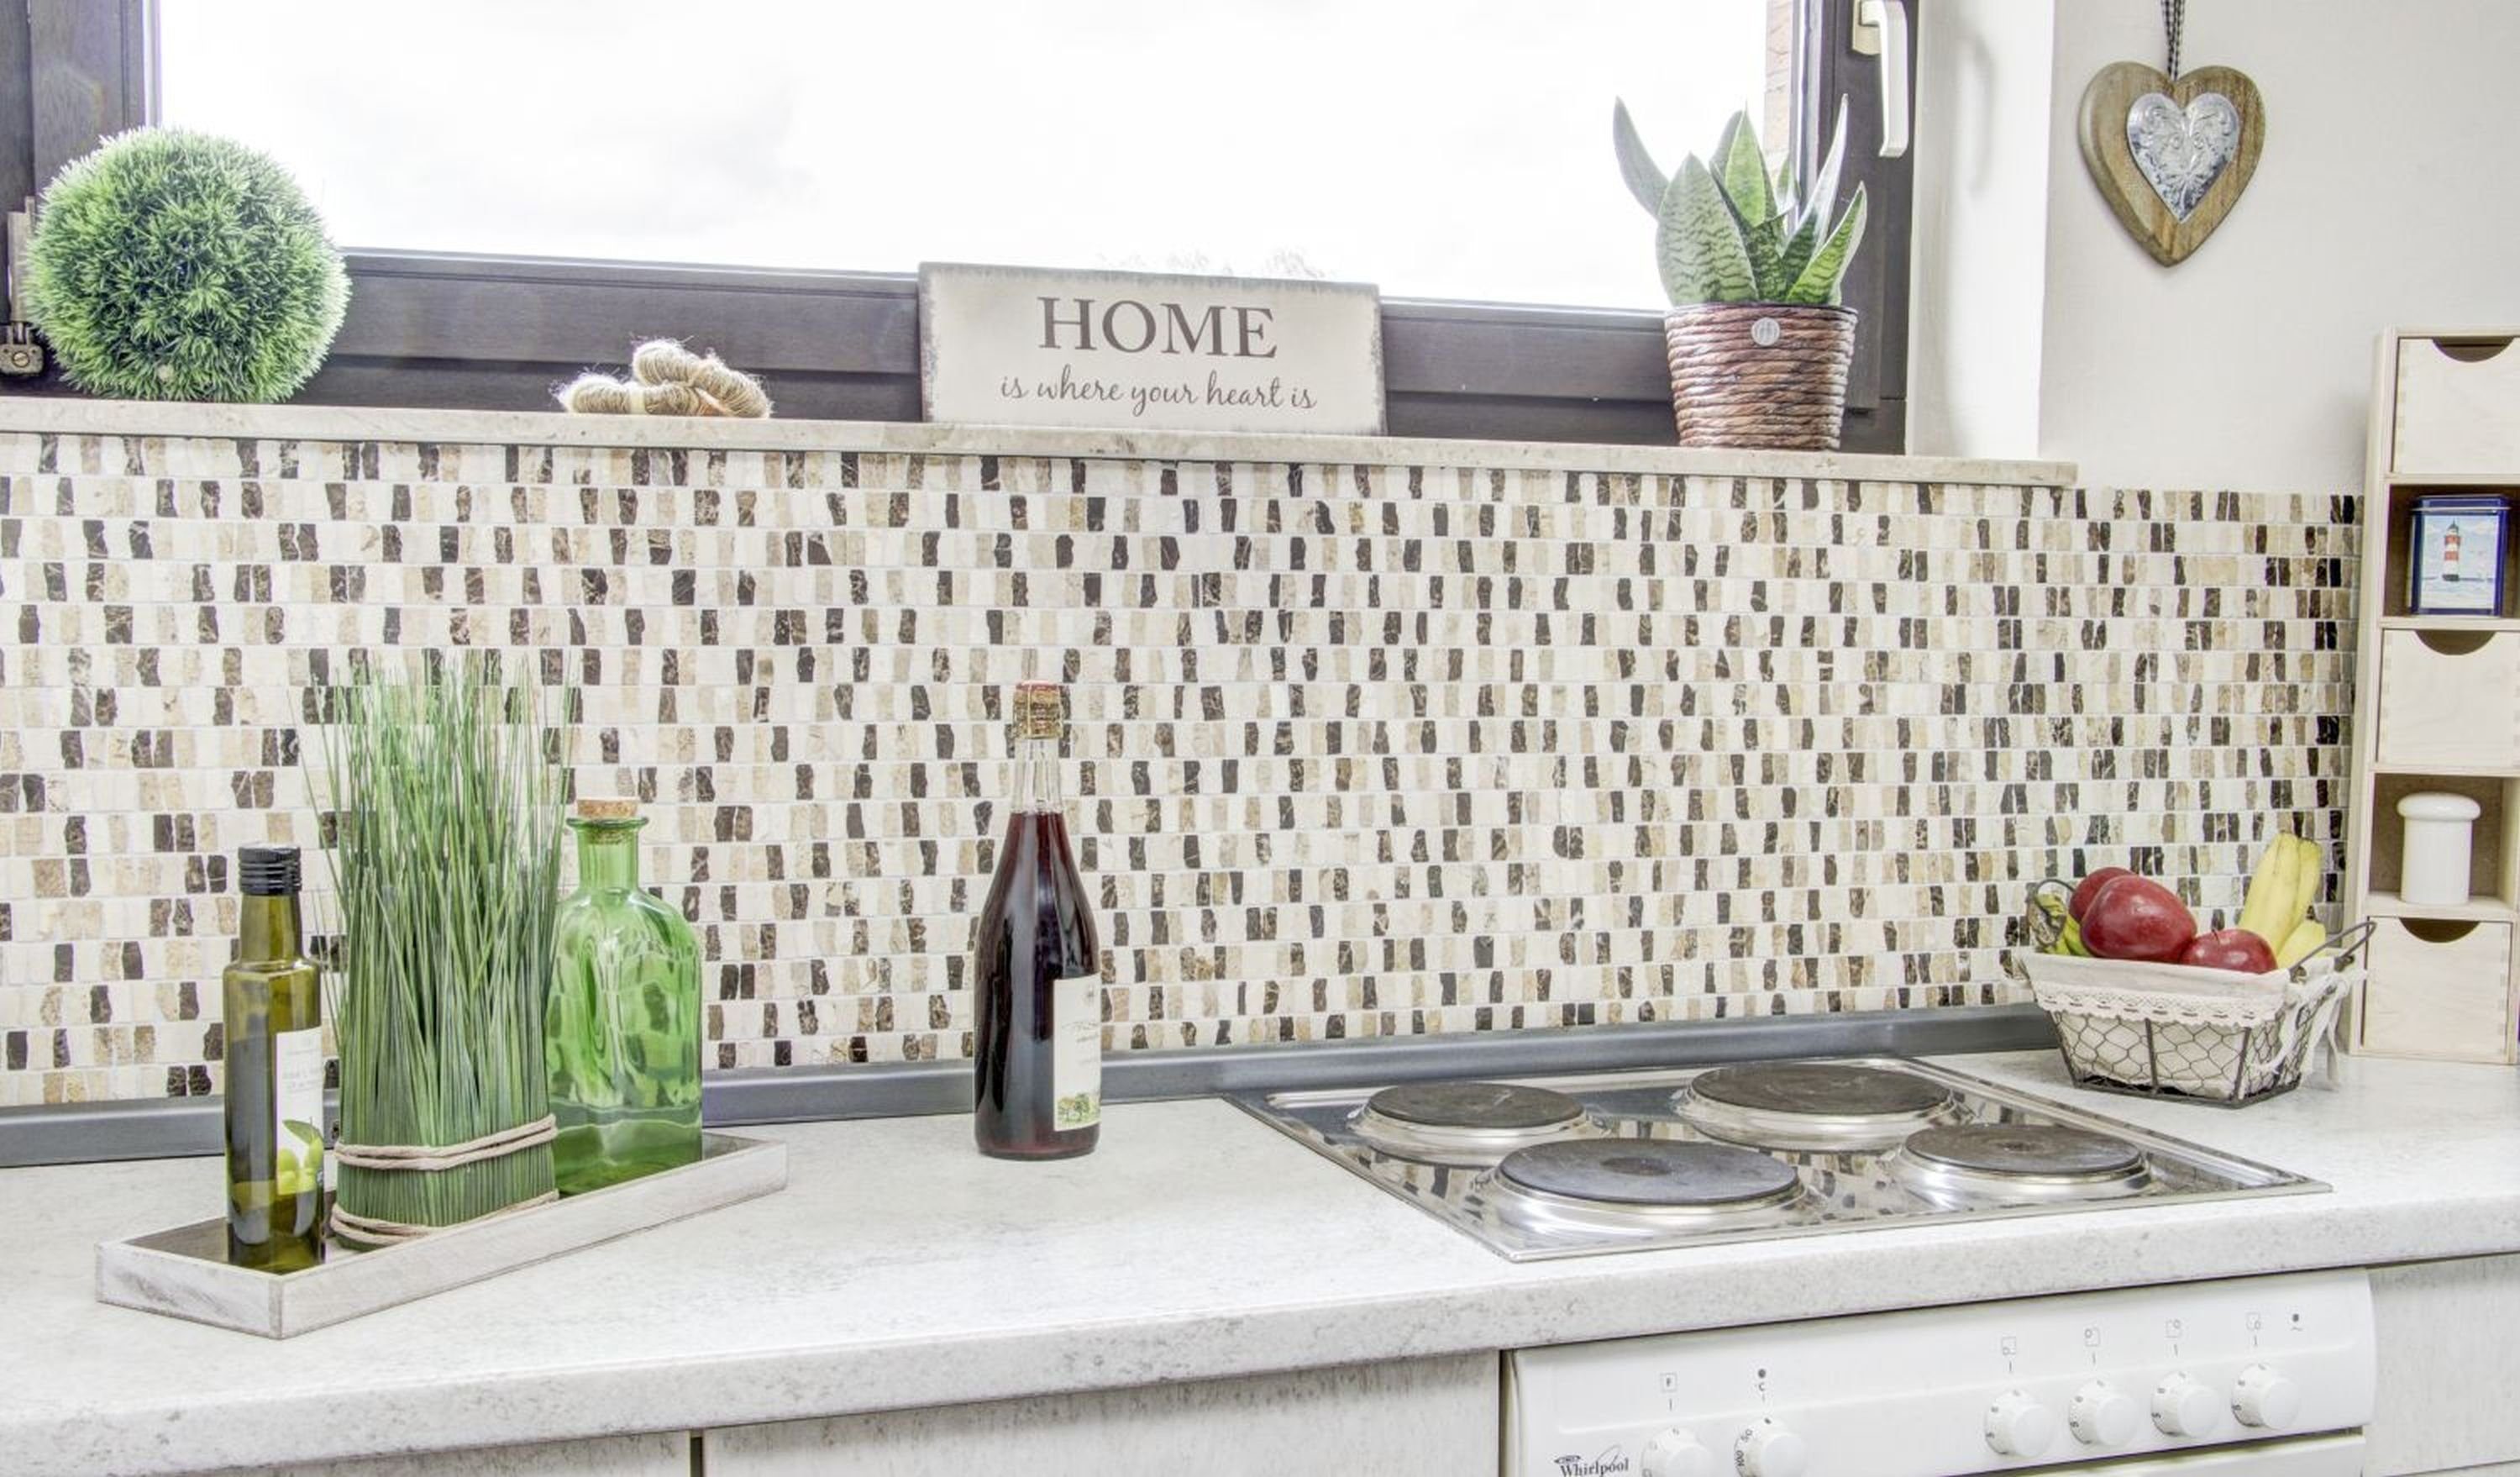 Mosani Mosaikfliesen Marmor Mosaik Fliese Naturstein Küche creme beige dunkelbraun